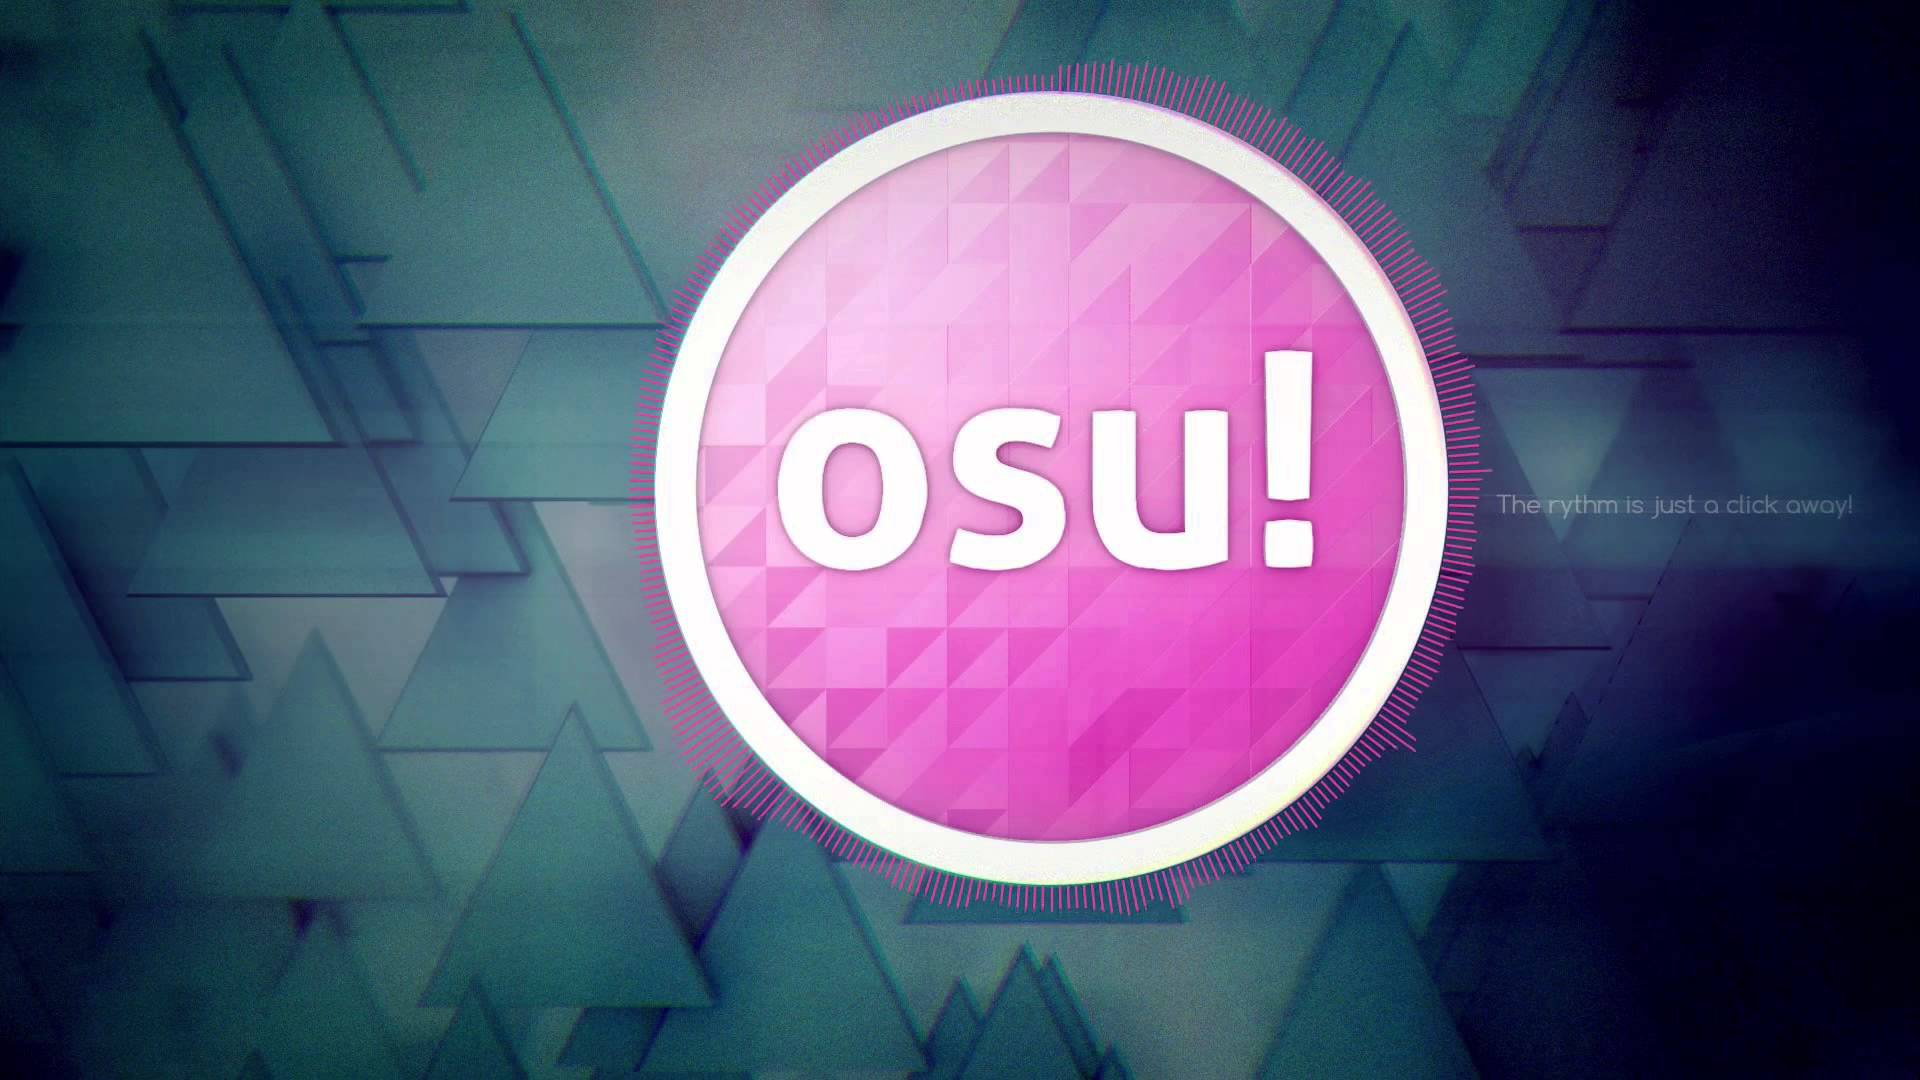 Hình nền Osu là một cách tuyệt vời để thể hiện tình yêu của bạn với tựa game âm nhạc tuyệt vời này. Với đủ màu sắc, hình ảnh vui nhộn và đầy năng lượng, hình nền Osu sẽ làm chủ nhân của chúng trở nên phấn khích để bắt đầu một ngày mới.